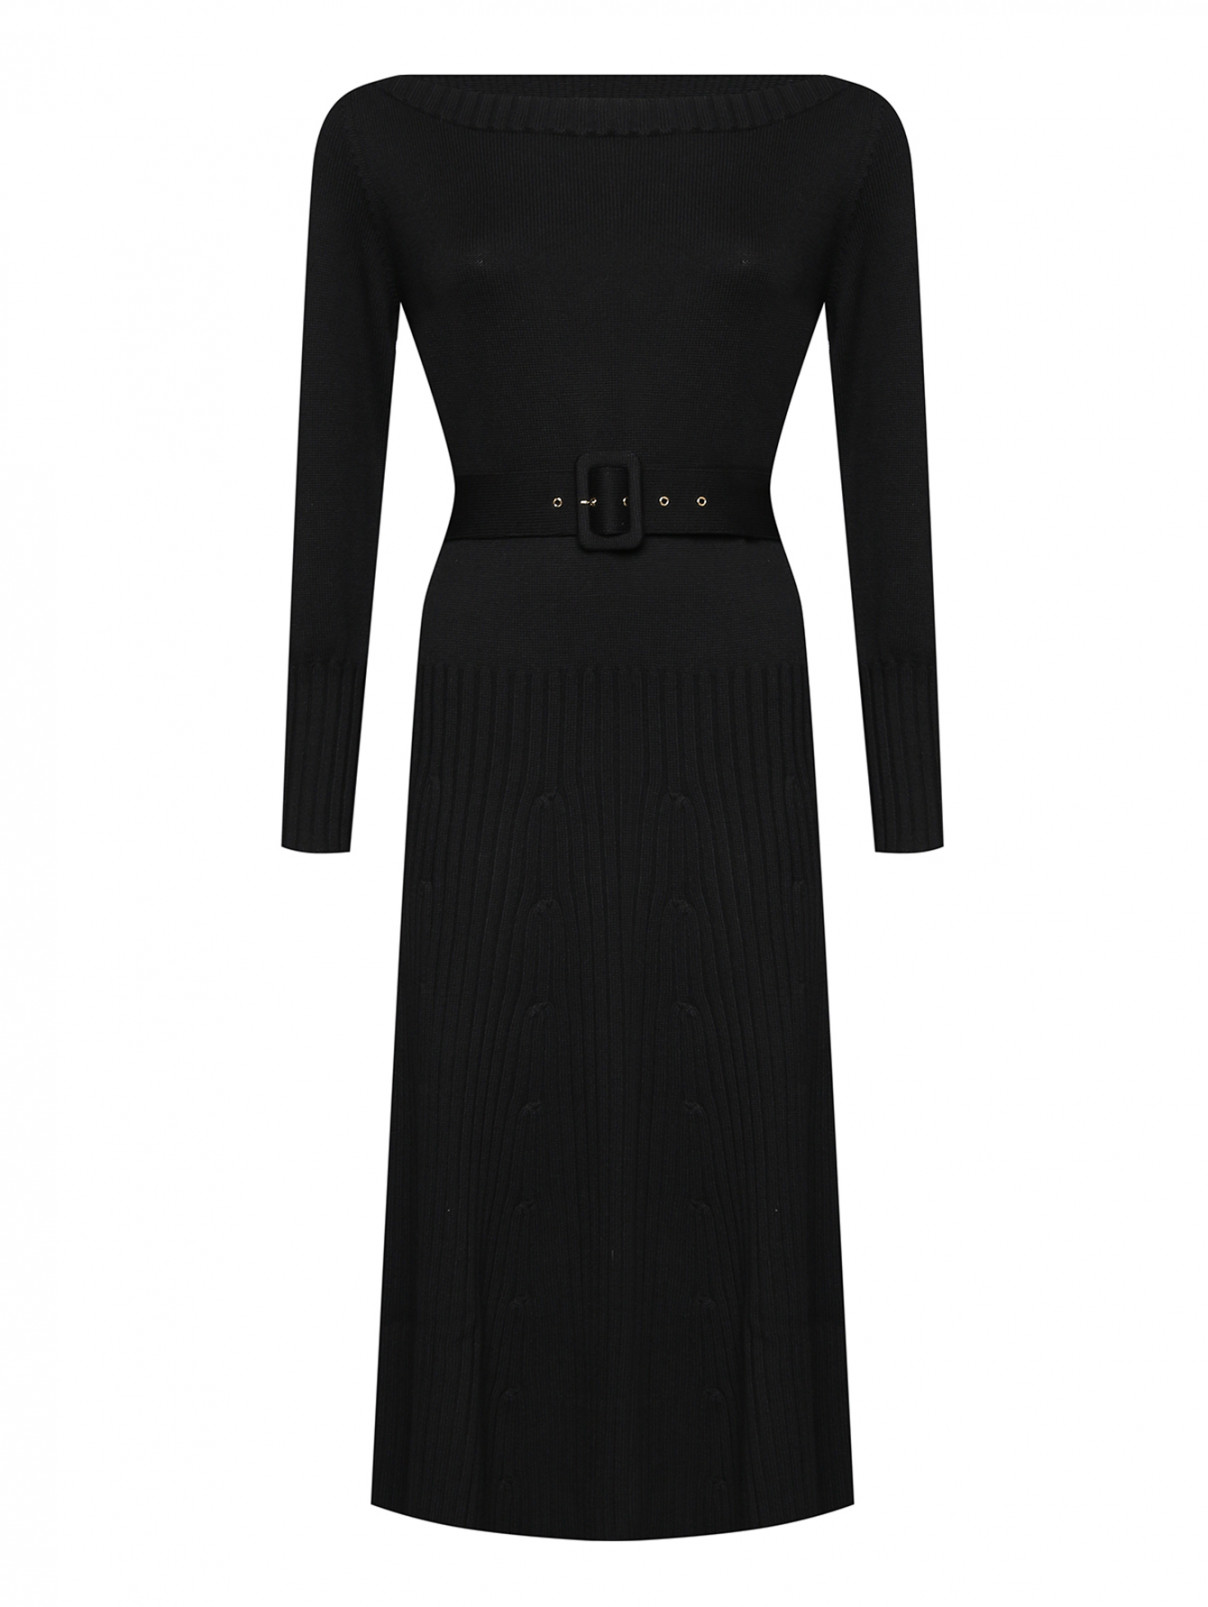 Трикотажное платье с поясом Luisa Spagnoli  –  Общий вид  – Цвет:  Черный